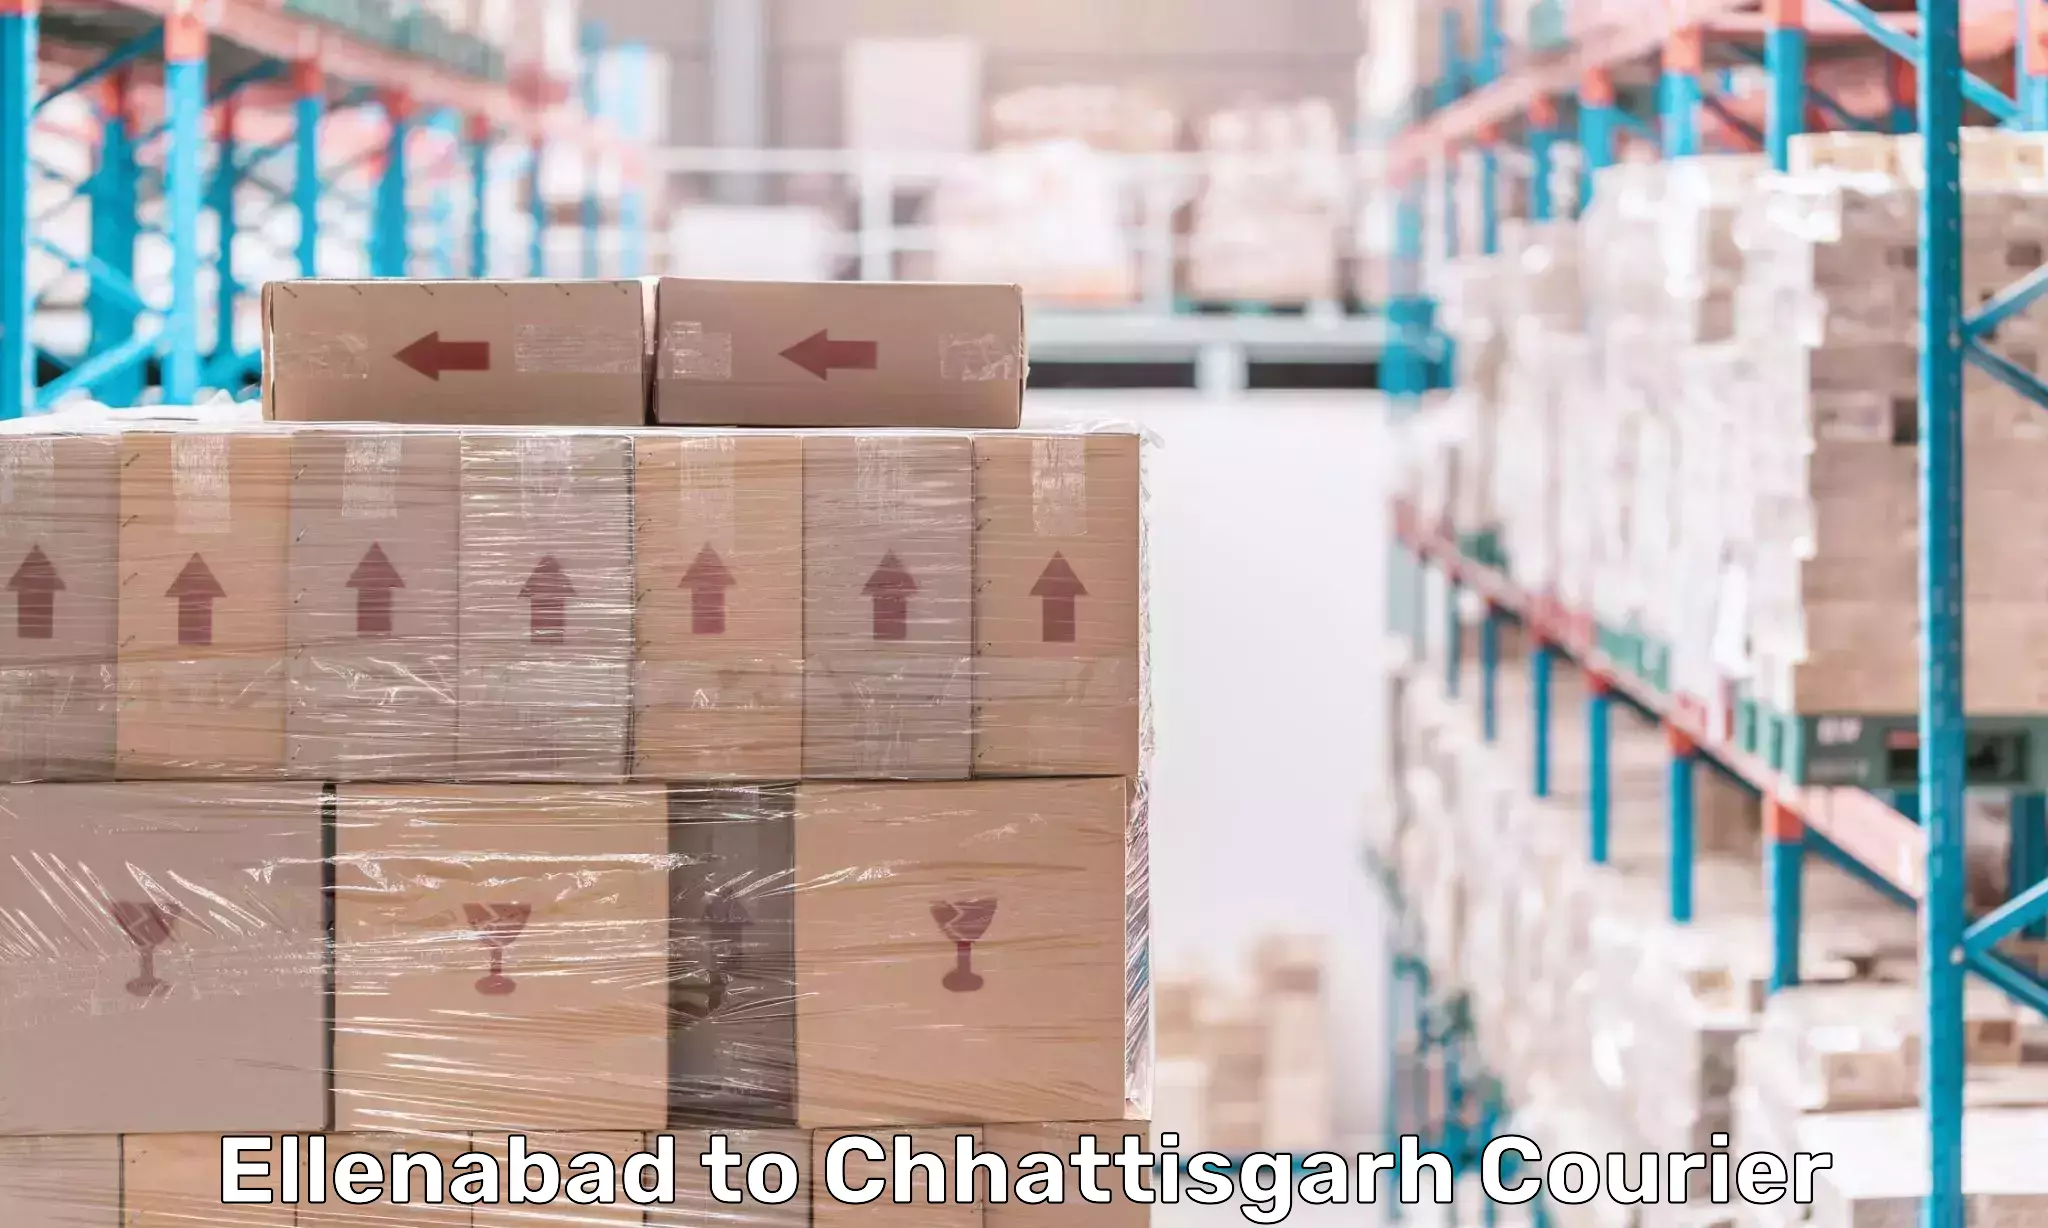 Logistics service provider Ellenabad to Chhattisgarh